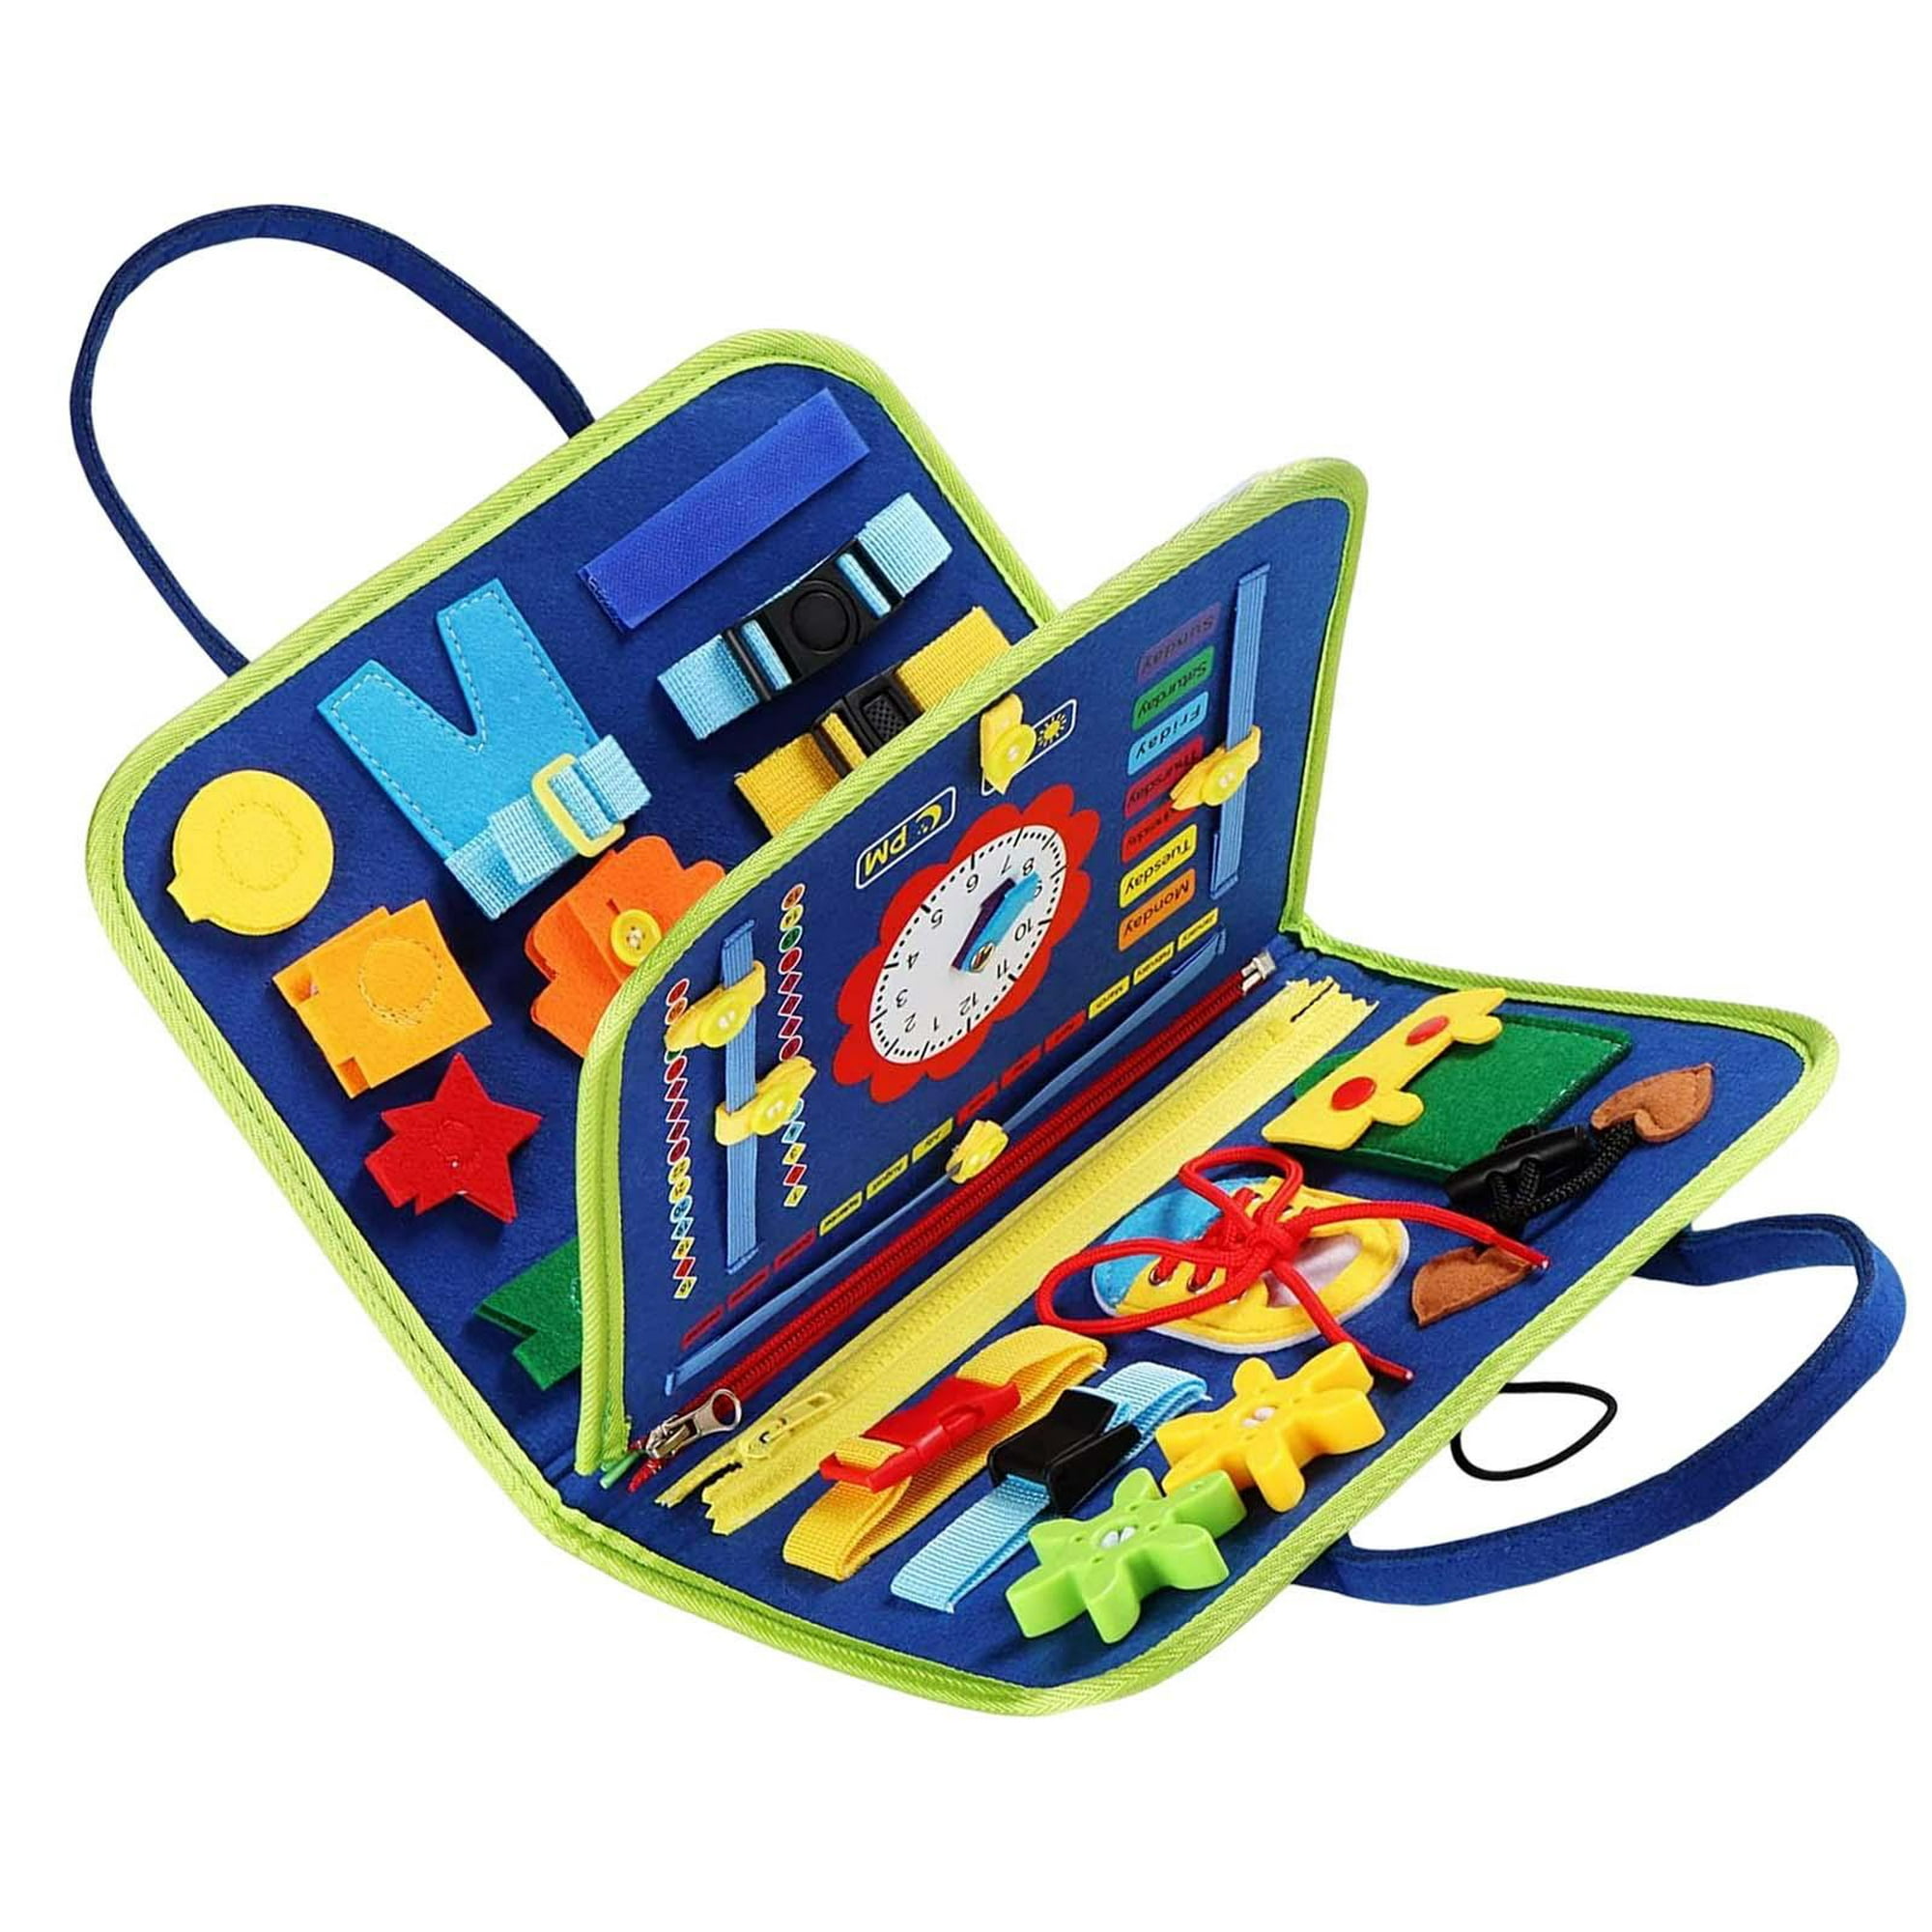 Ancistro Busy Board - Juguetes Montessori para niños y niñas de 1, 2, 3, 4  años, juguetes de aprendizaje preescolar para vestido básico, habilidades